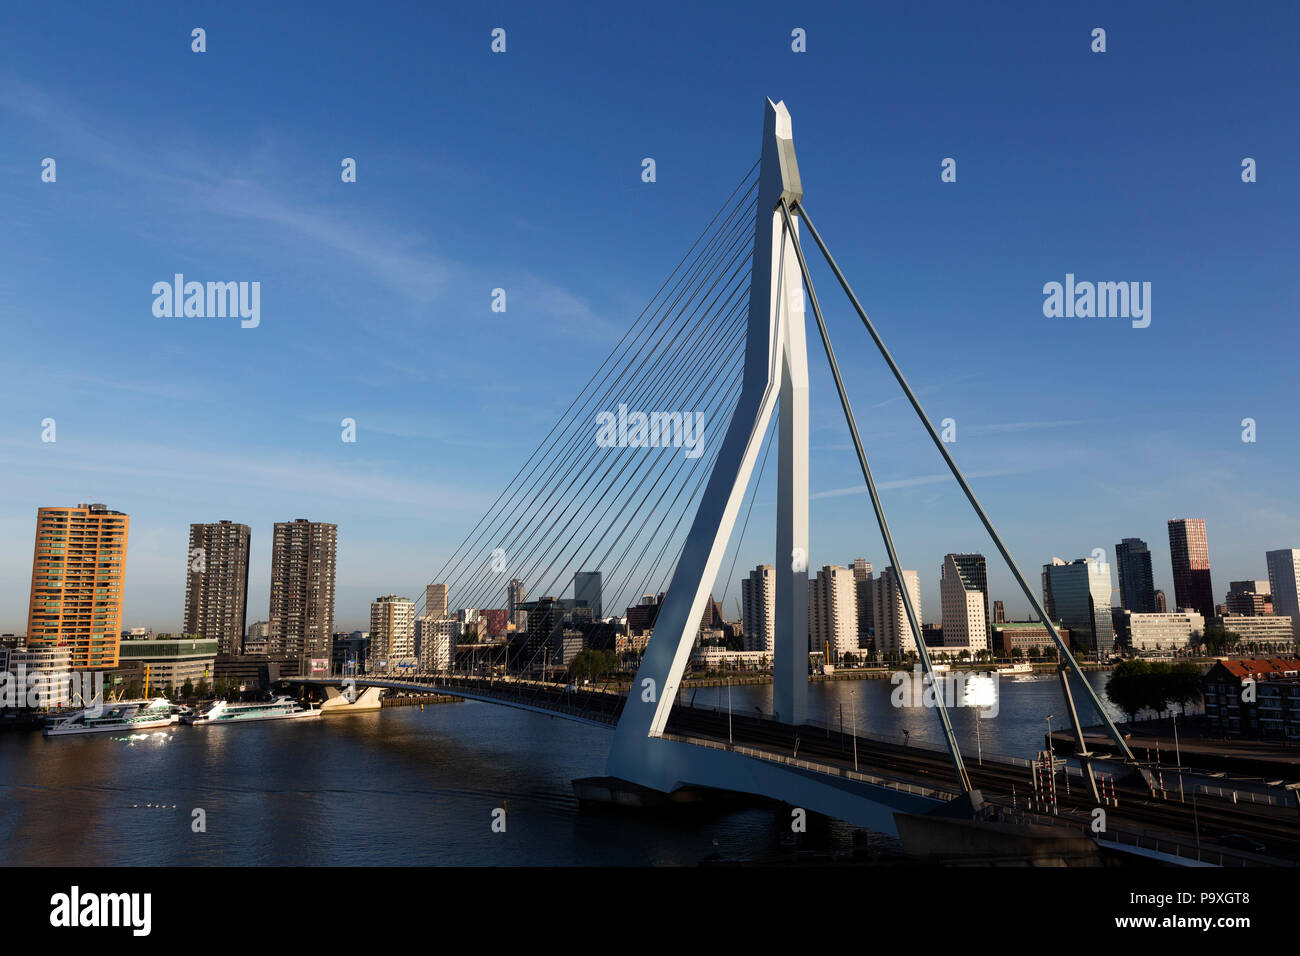 Il ponte di Erasmus attraversa il nuovo Mosa (Nieuwe Maas) river a Rotterdam, Paesi Bassi. Il ponte è stato progettato da Ben van Berkel e aperto in 19 Foto Stock